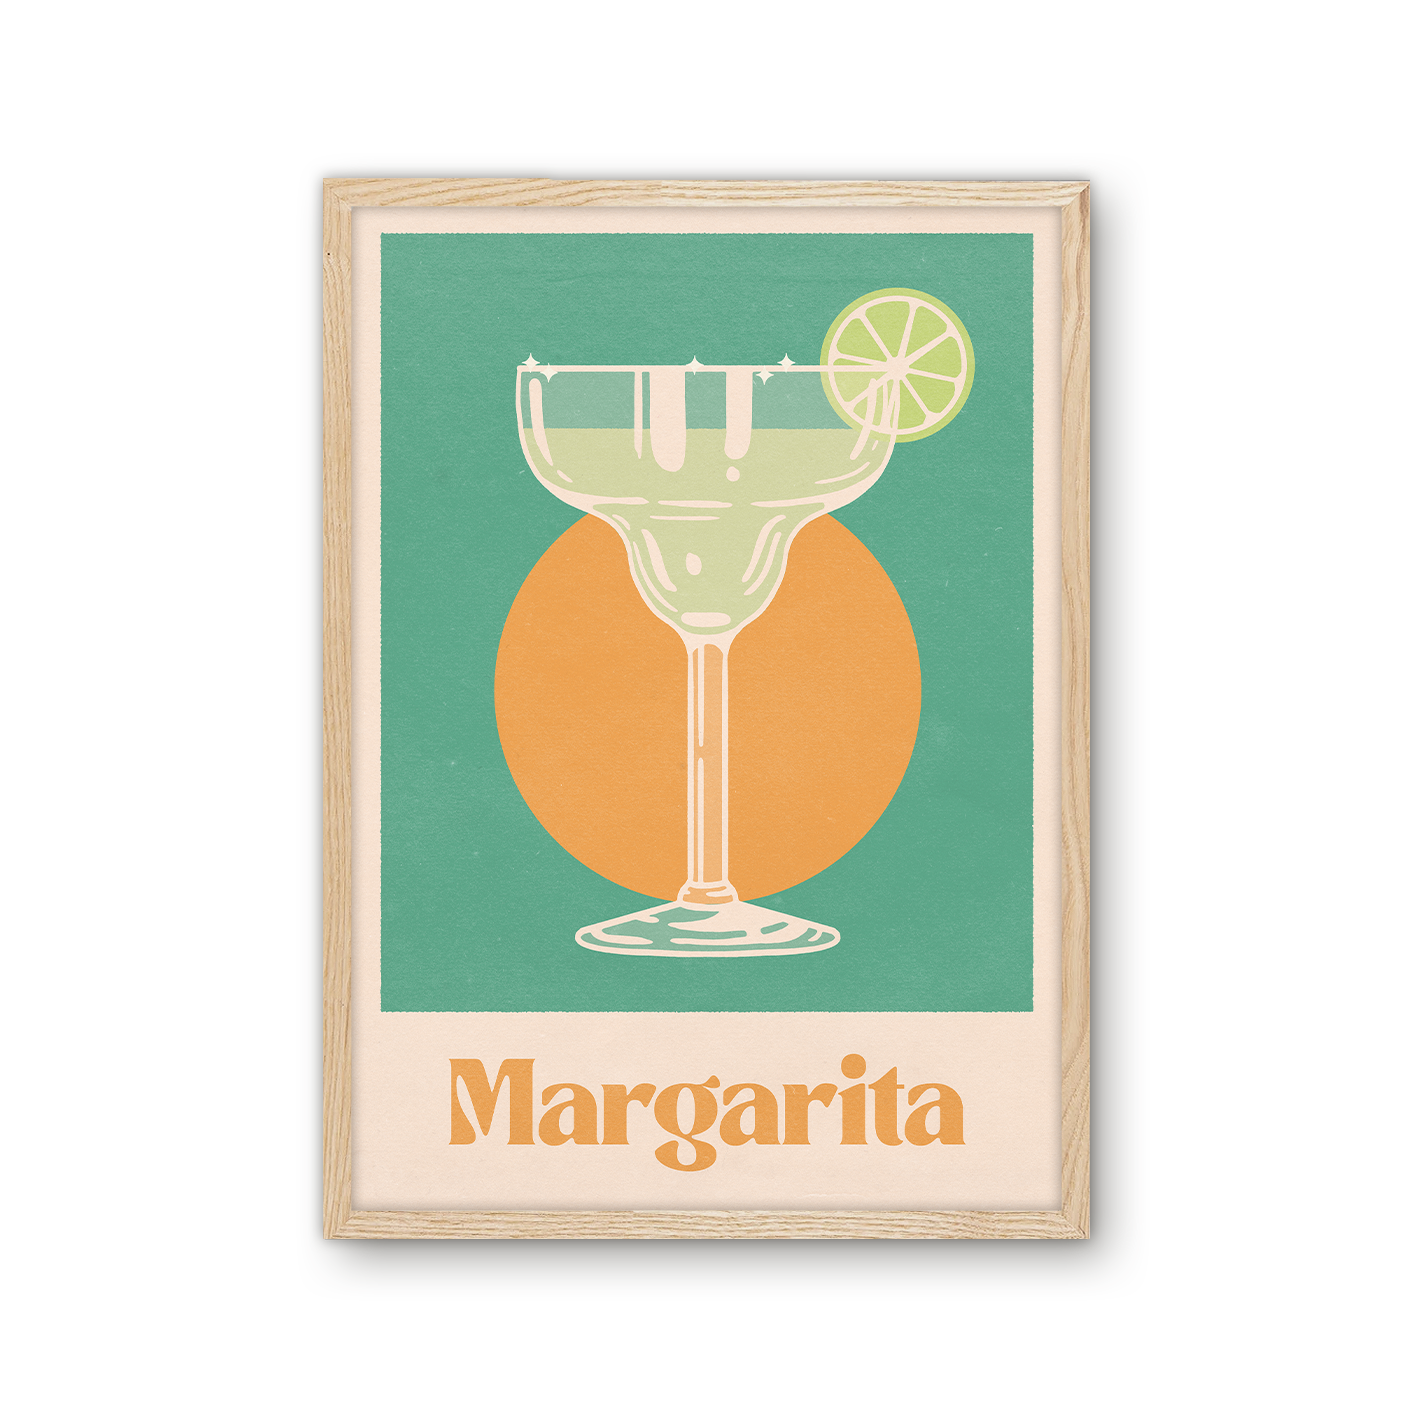 'Margarita' Print